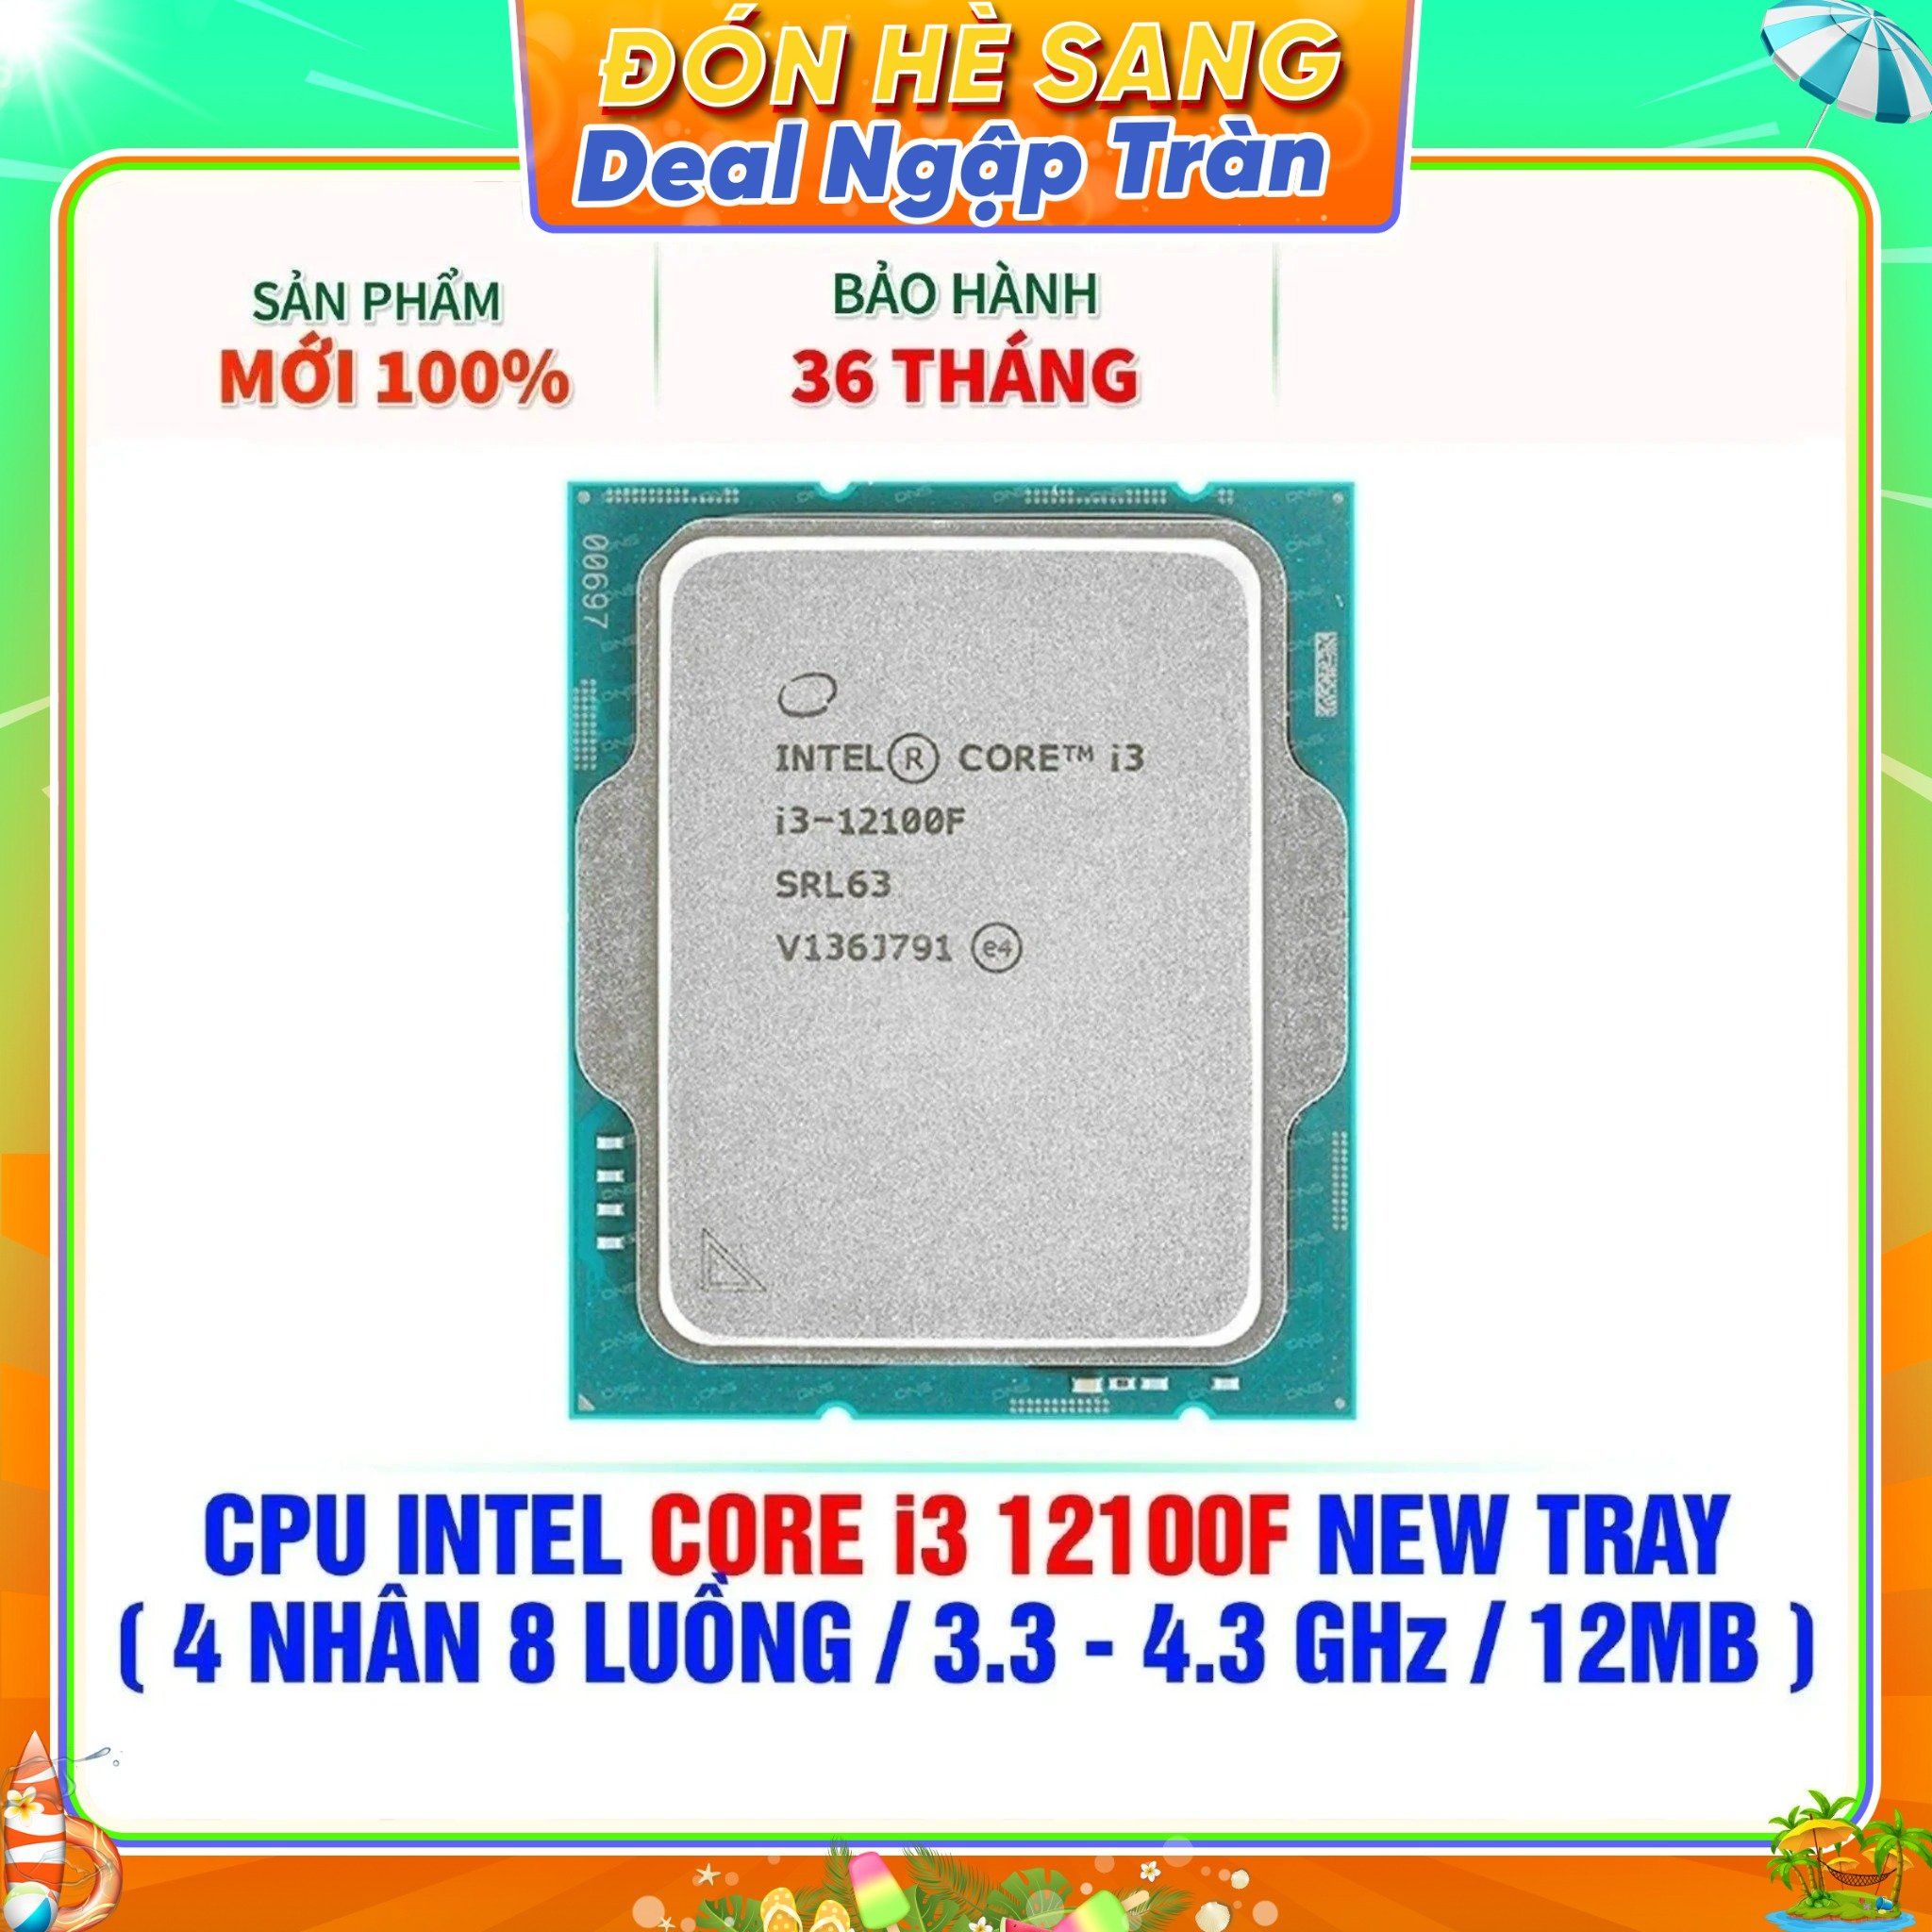  CPU INTEL CORE i3 12100F NEW TRAY - CHƯA KÈM TẢN NHIỆT ( 4 NHÂN 8 LUỒNG / 3.3 - 4.3 GHz / 12MB ) 